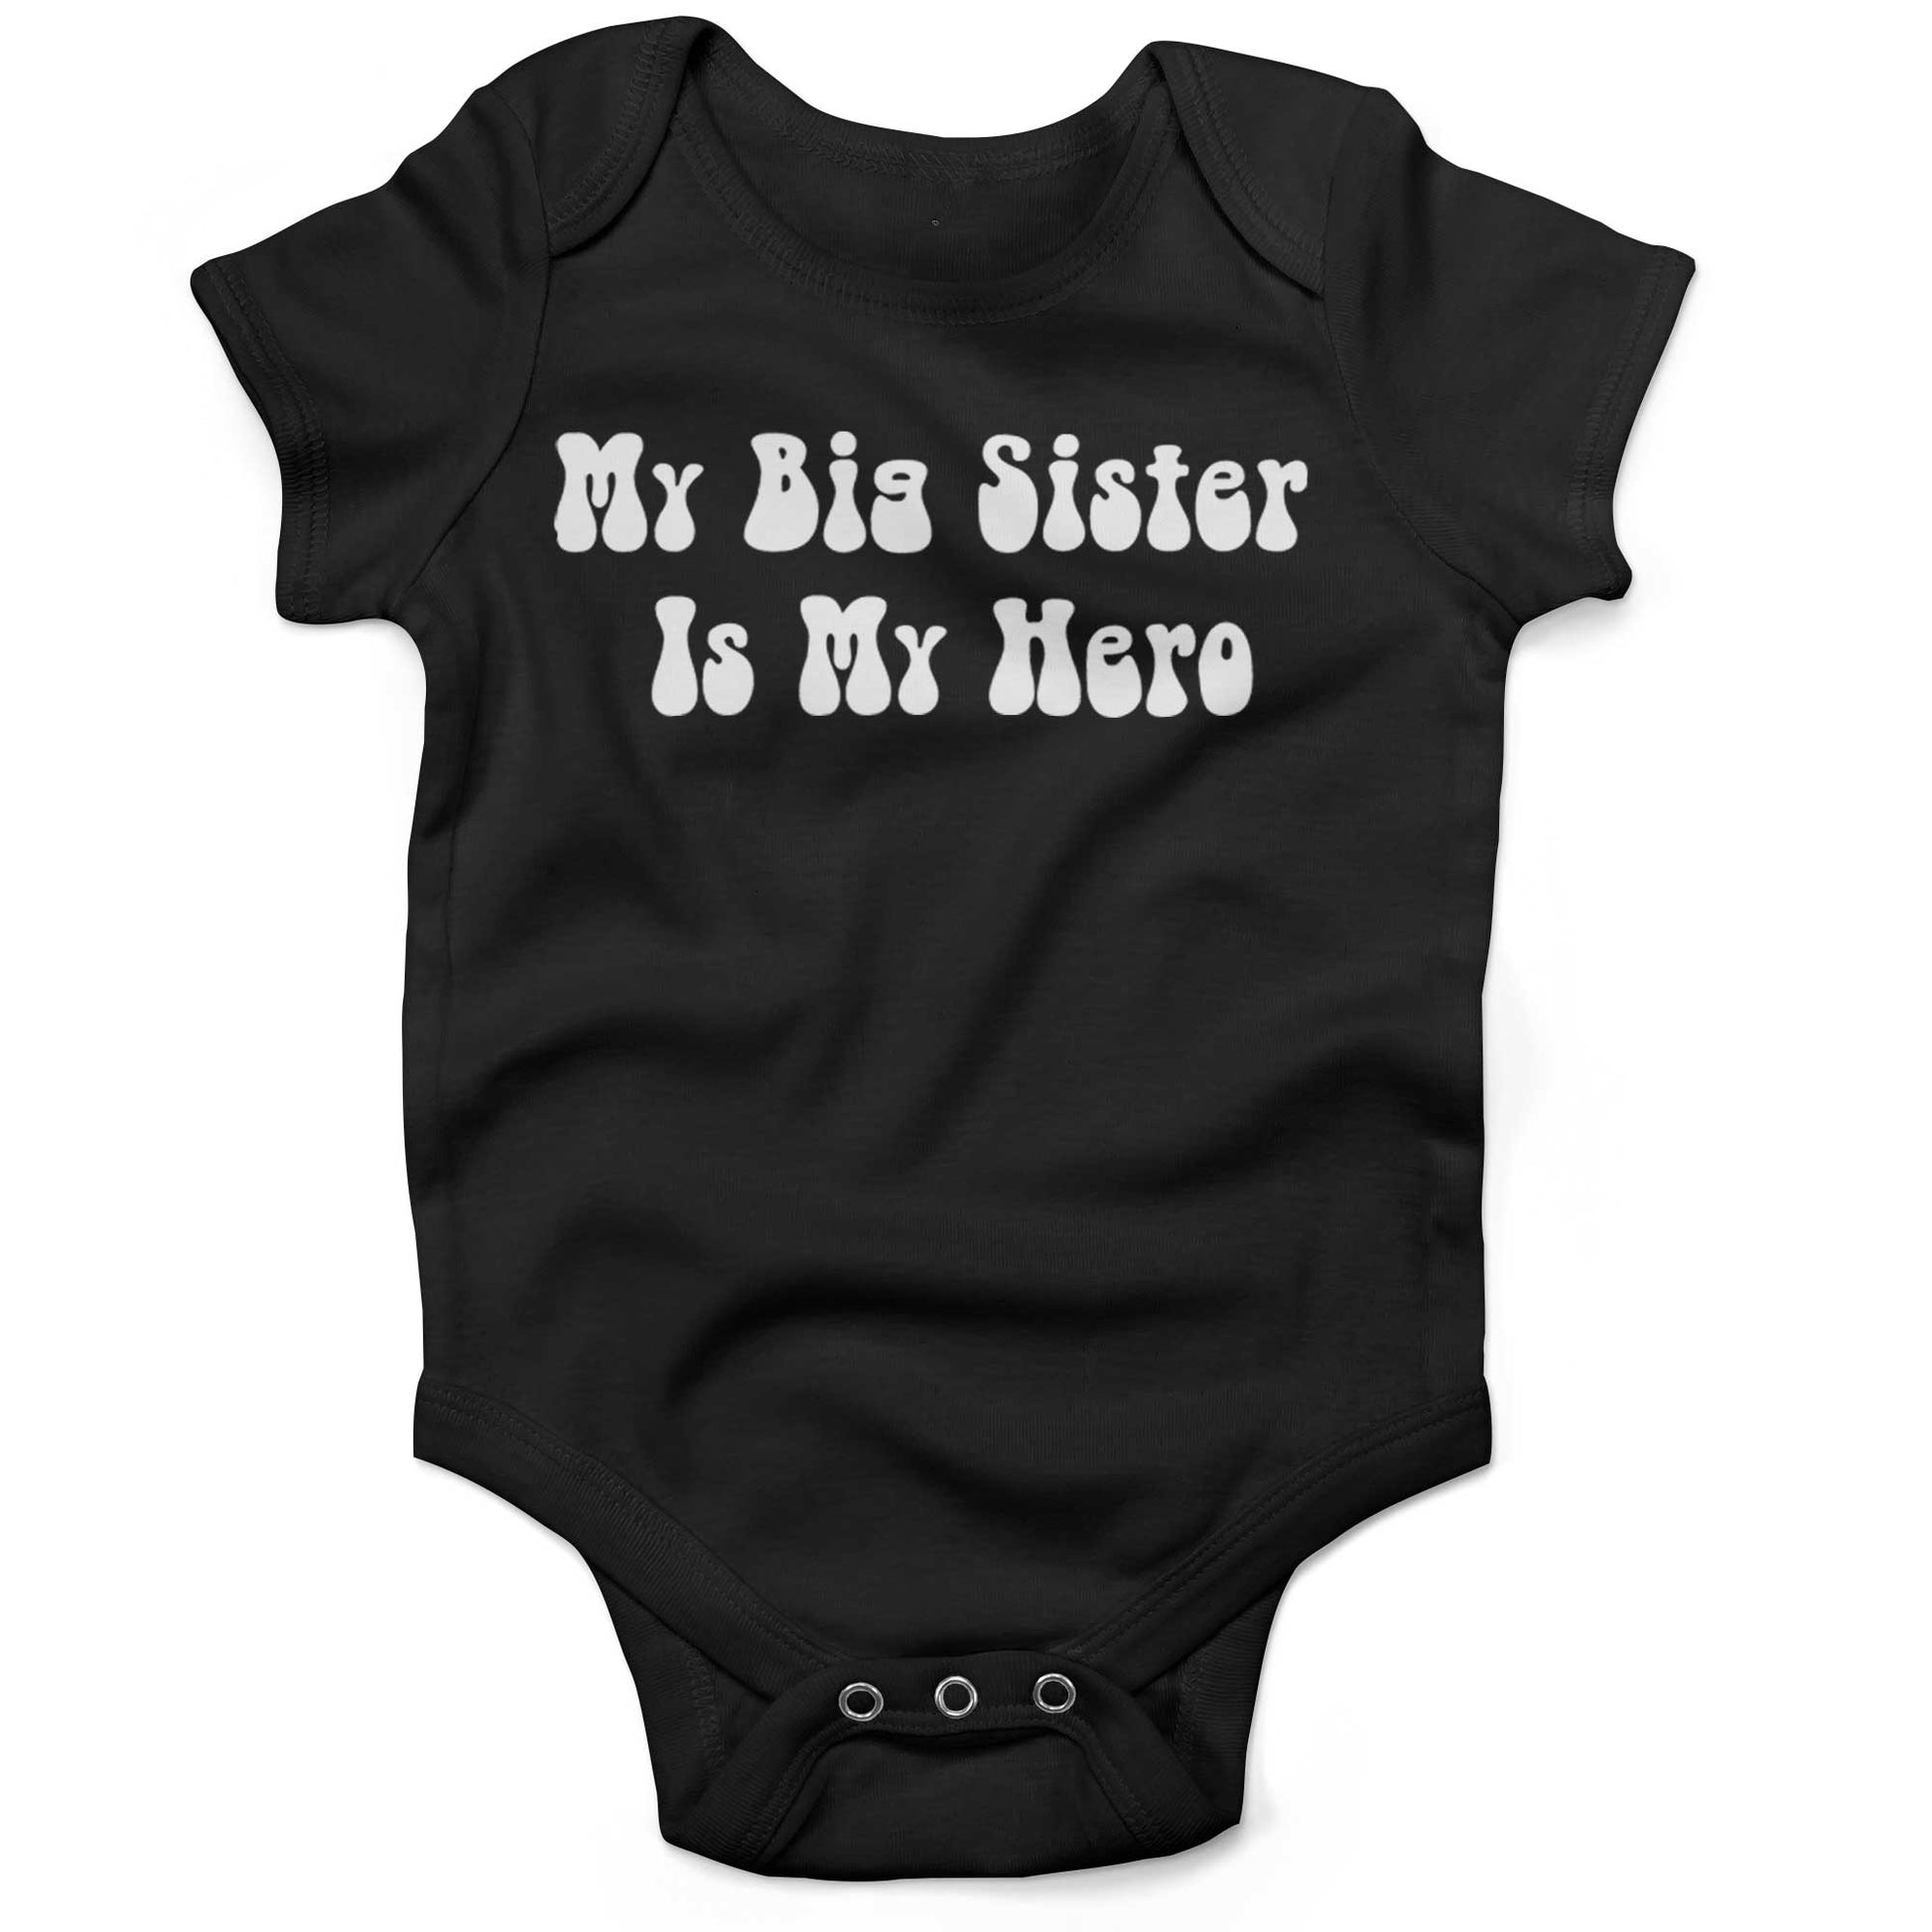 My Big Sister Is My Hero Infant Bodysuit or Raglan Tee-Organic Black-3-6 months